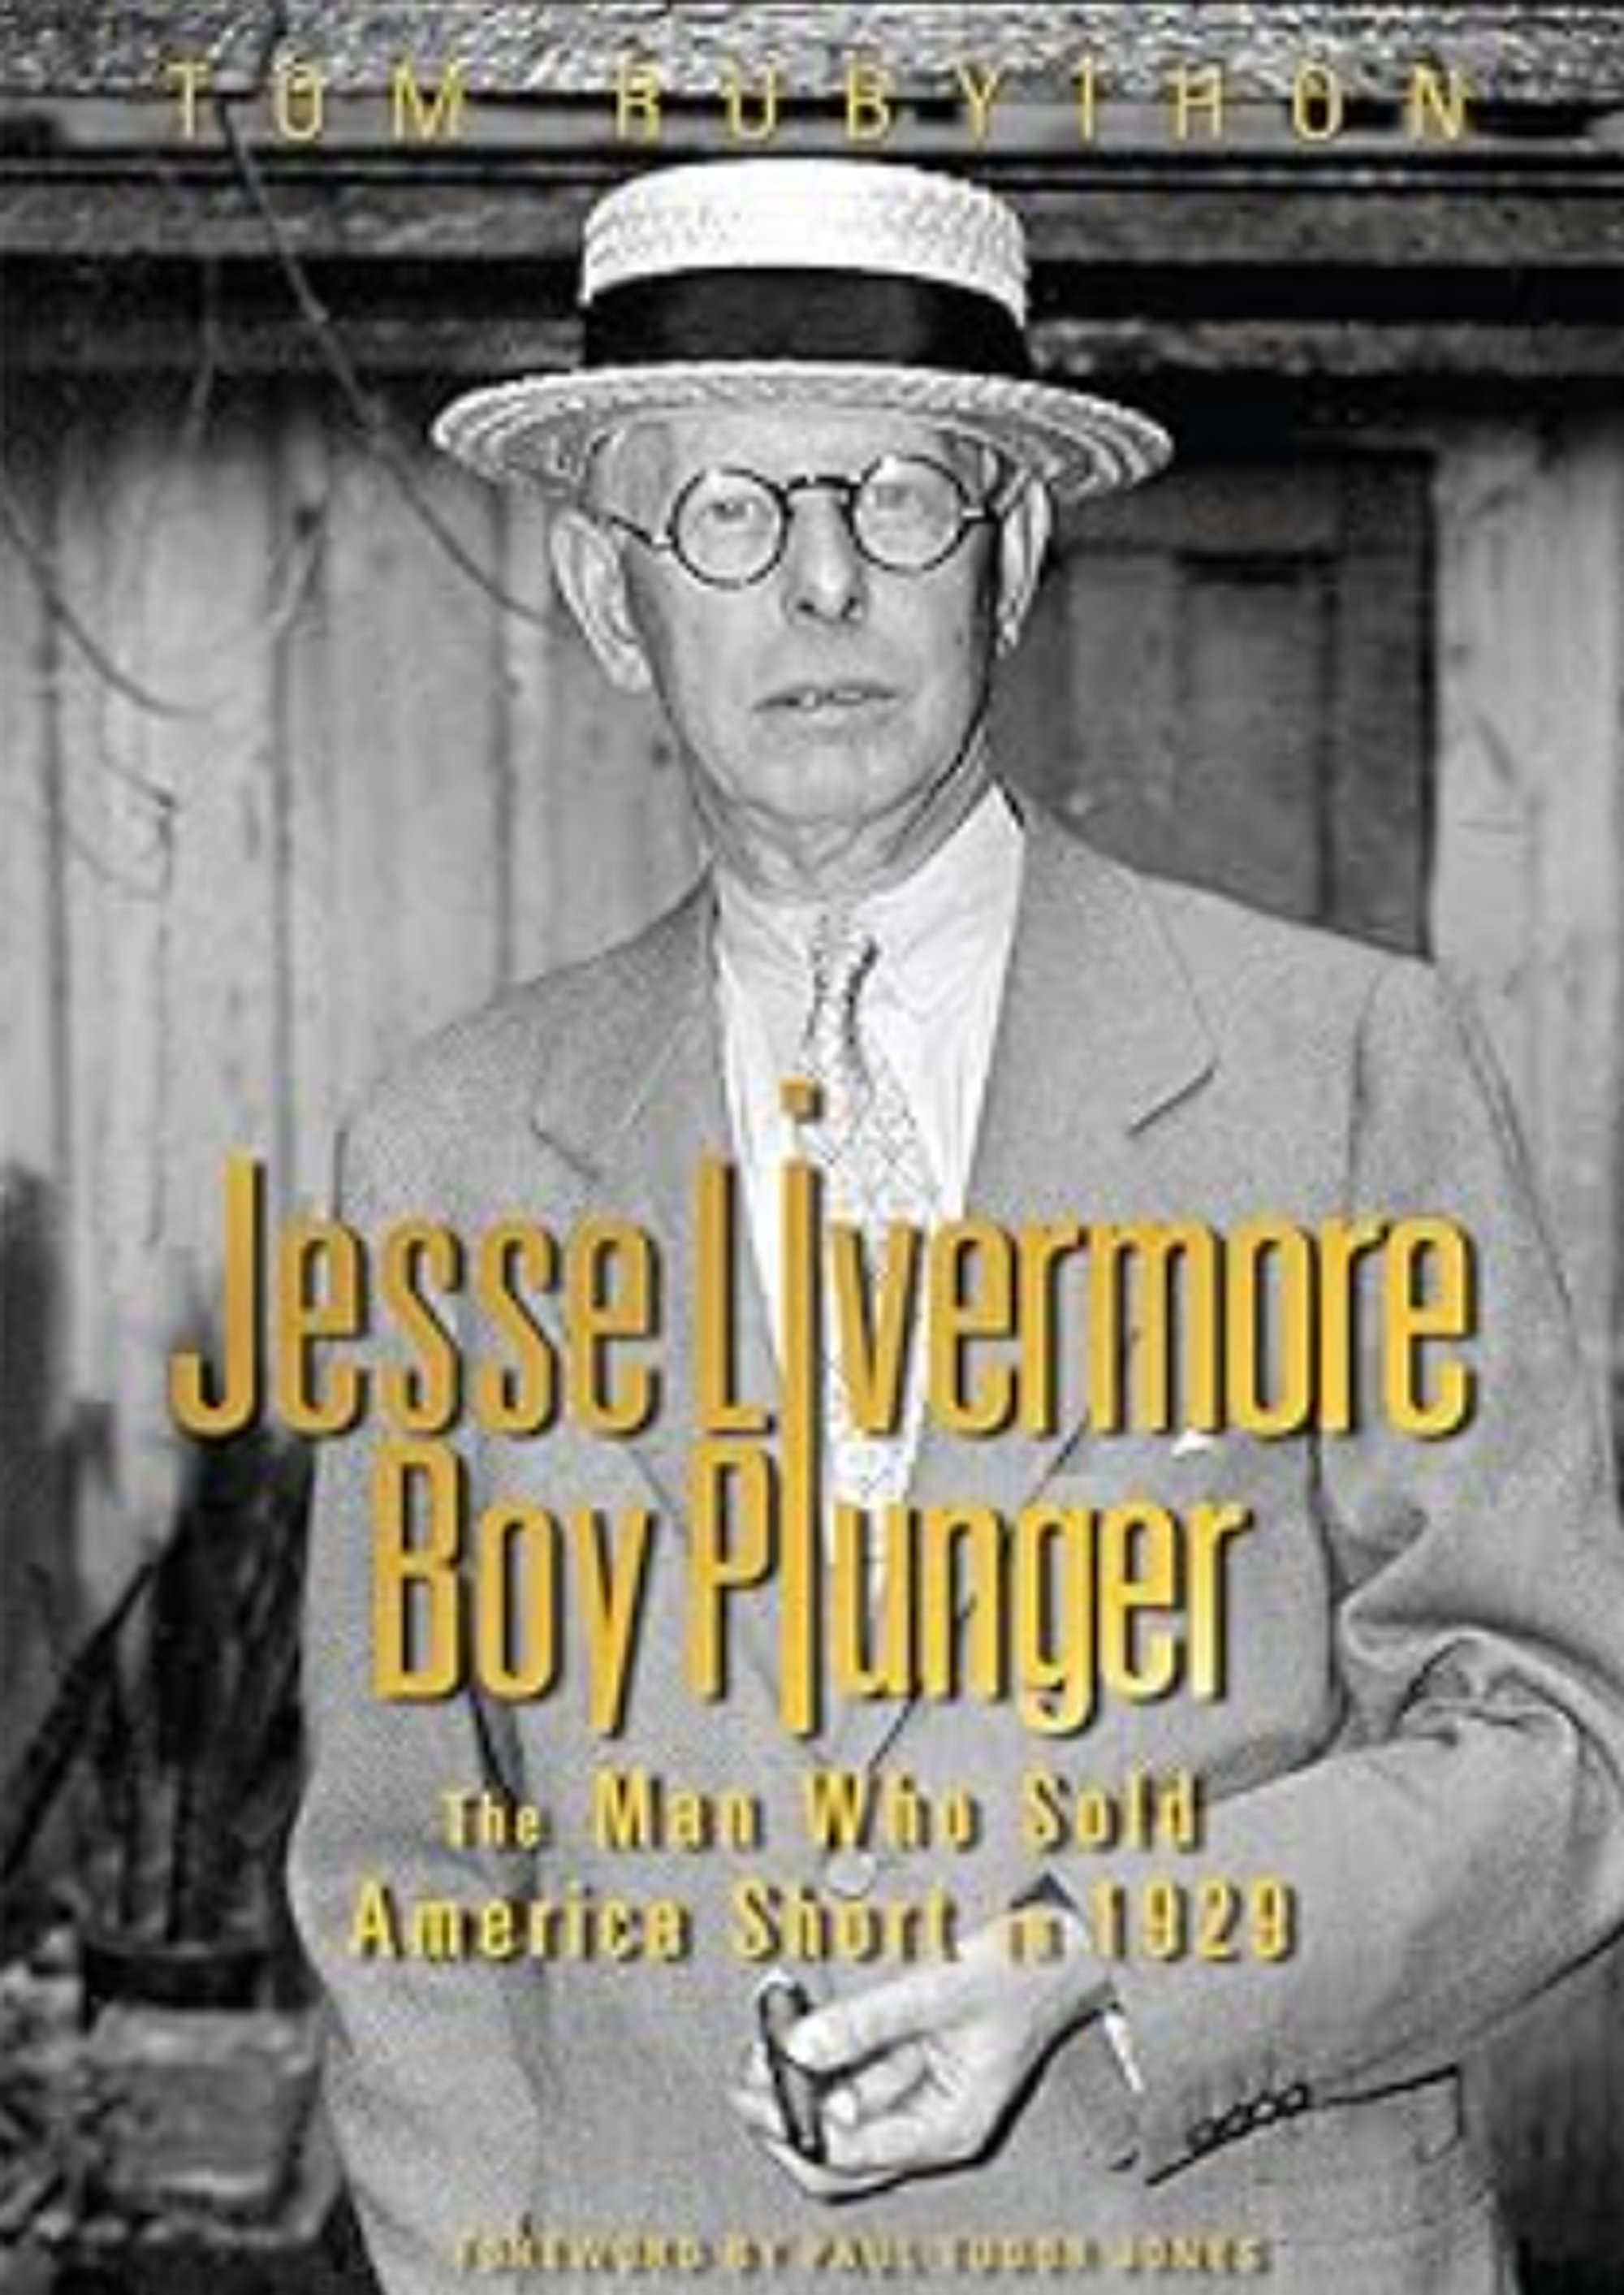 아마존 사이트에서 찾은 제시 리버모어의 전기 《Jesse Livermore Boy Plunger》(소년 투기꾼 제시 리버모어)의 표지입니다. ⓒ더머틀프레스